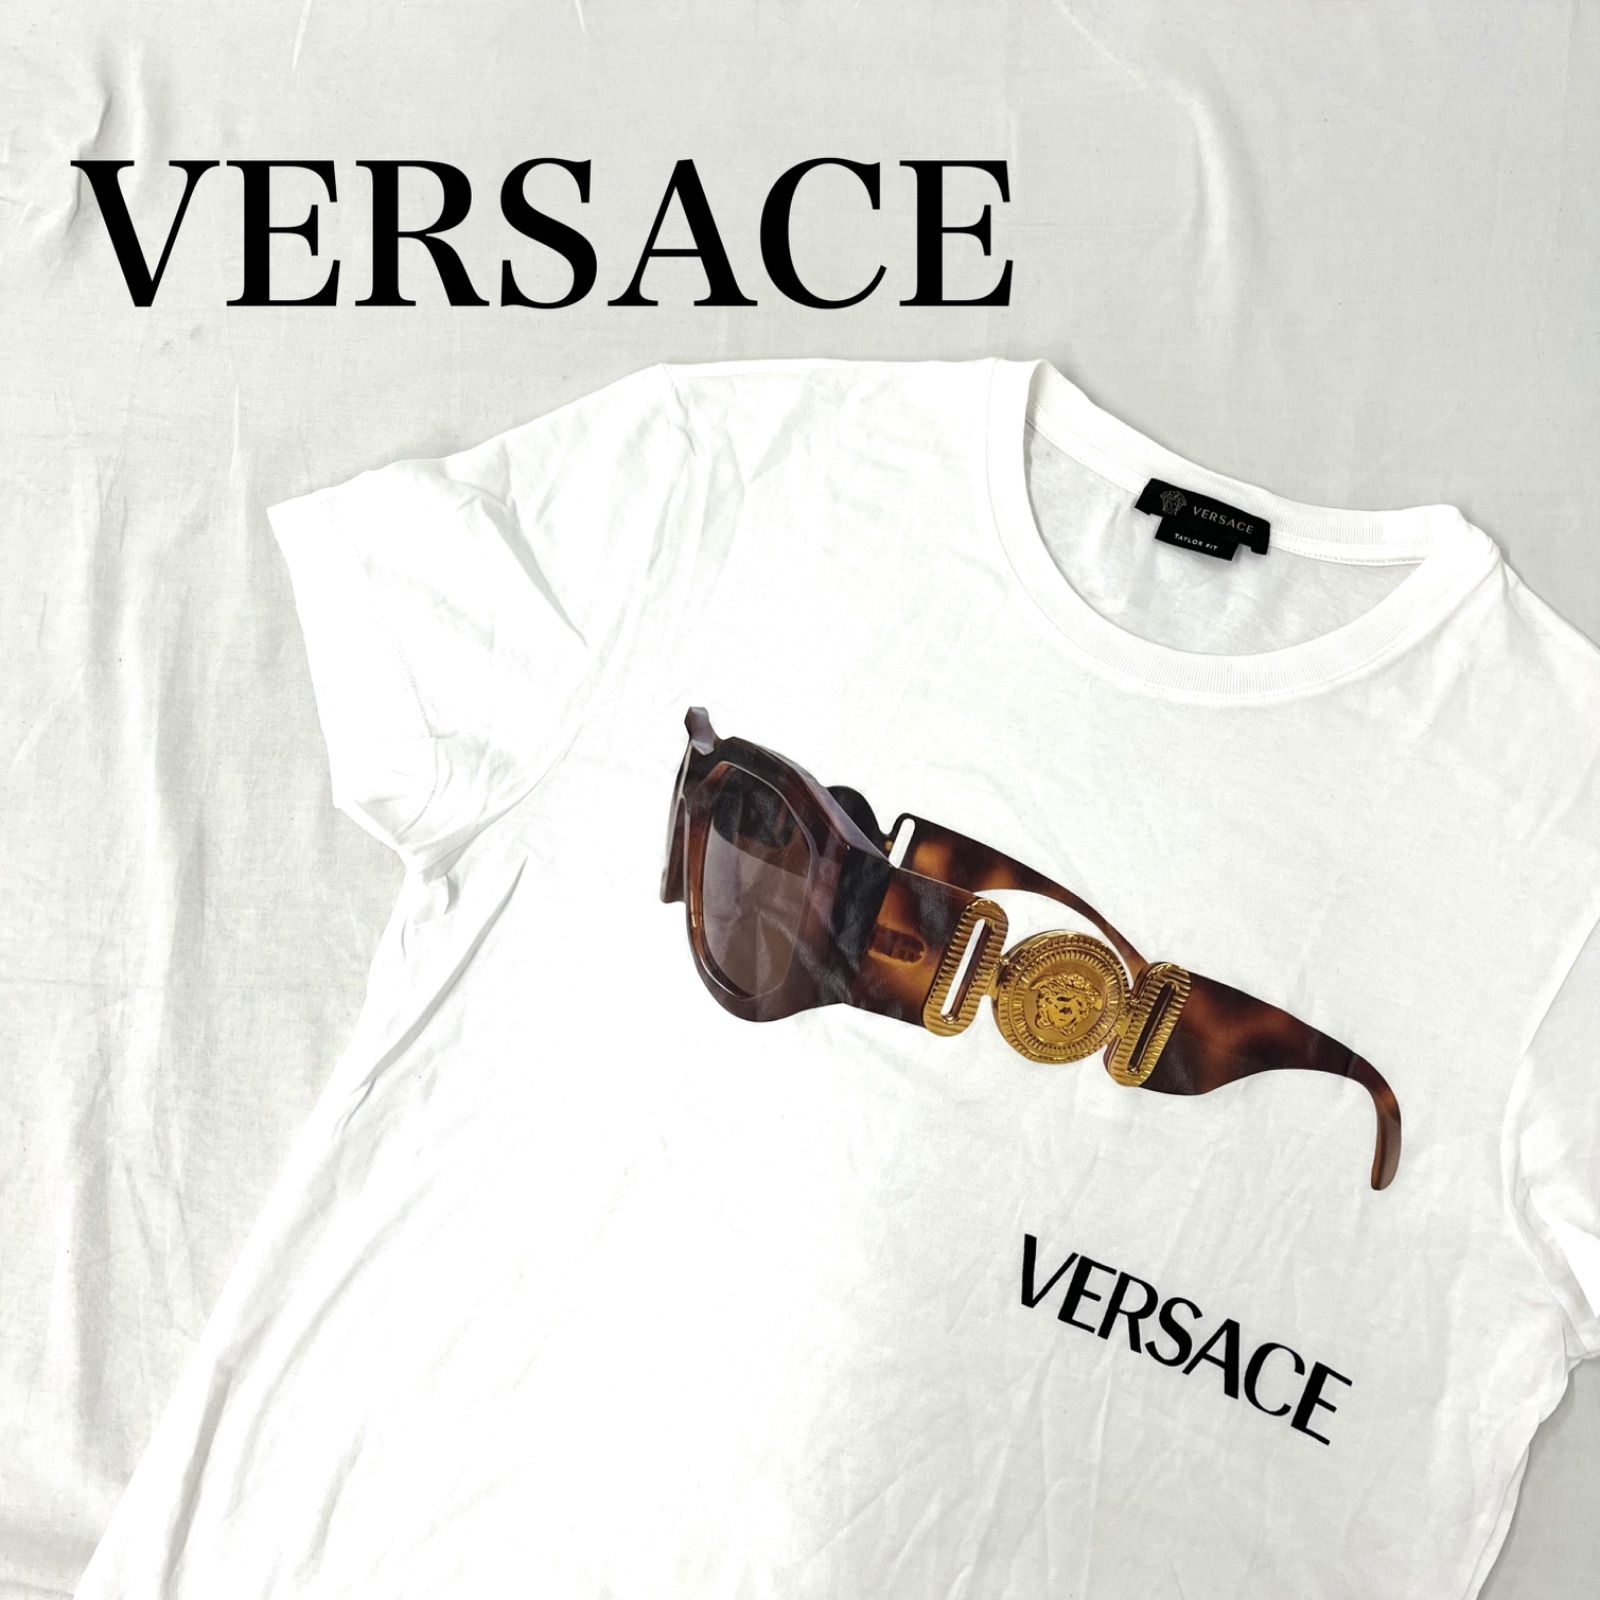 VERSACE ヴェルサーチ Tシャツ ロゴ サングラスロゴ コットン100% ブランドT メンズ